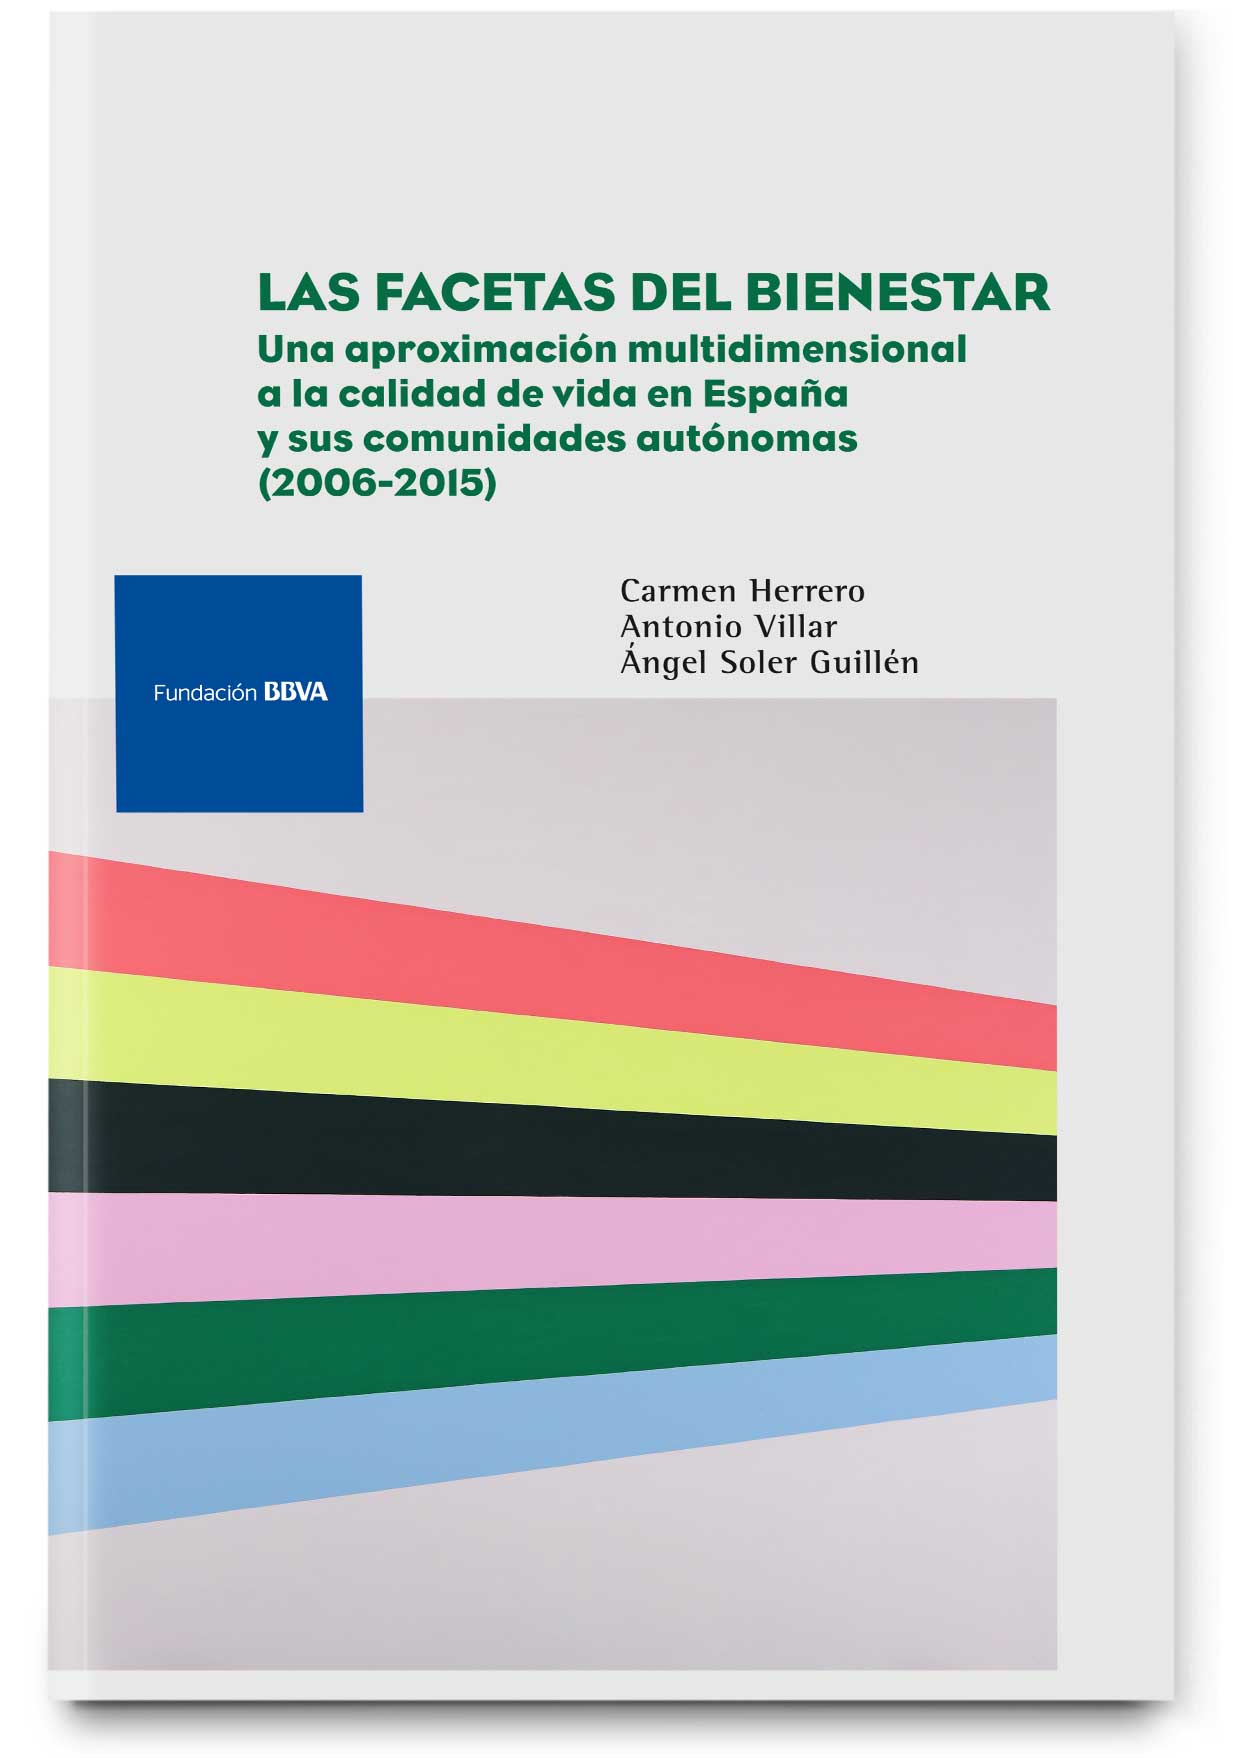 Las facetas del bienestar: una aproximación multidimensional a la calidad de vida en España y sus comunidades autónomas 2006-2015